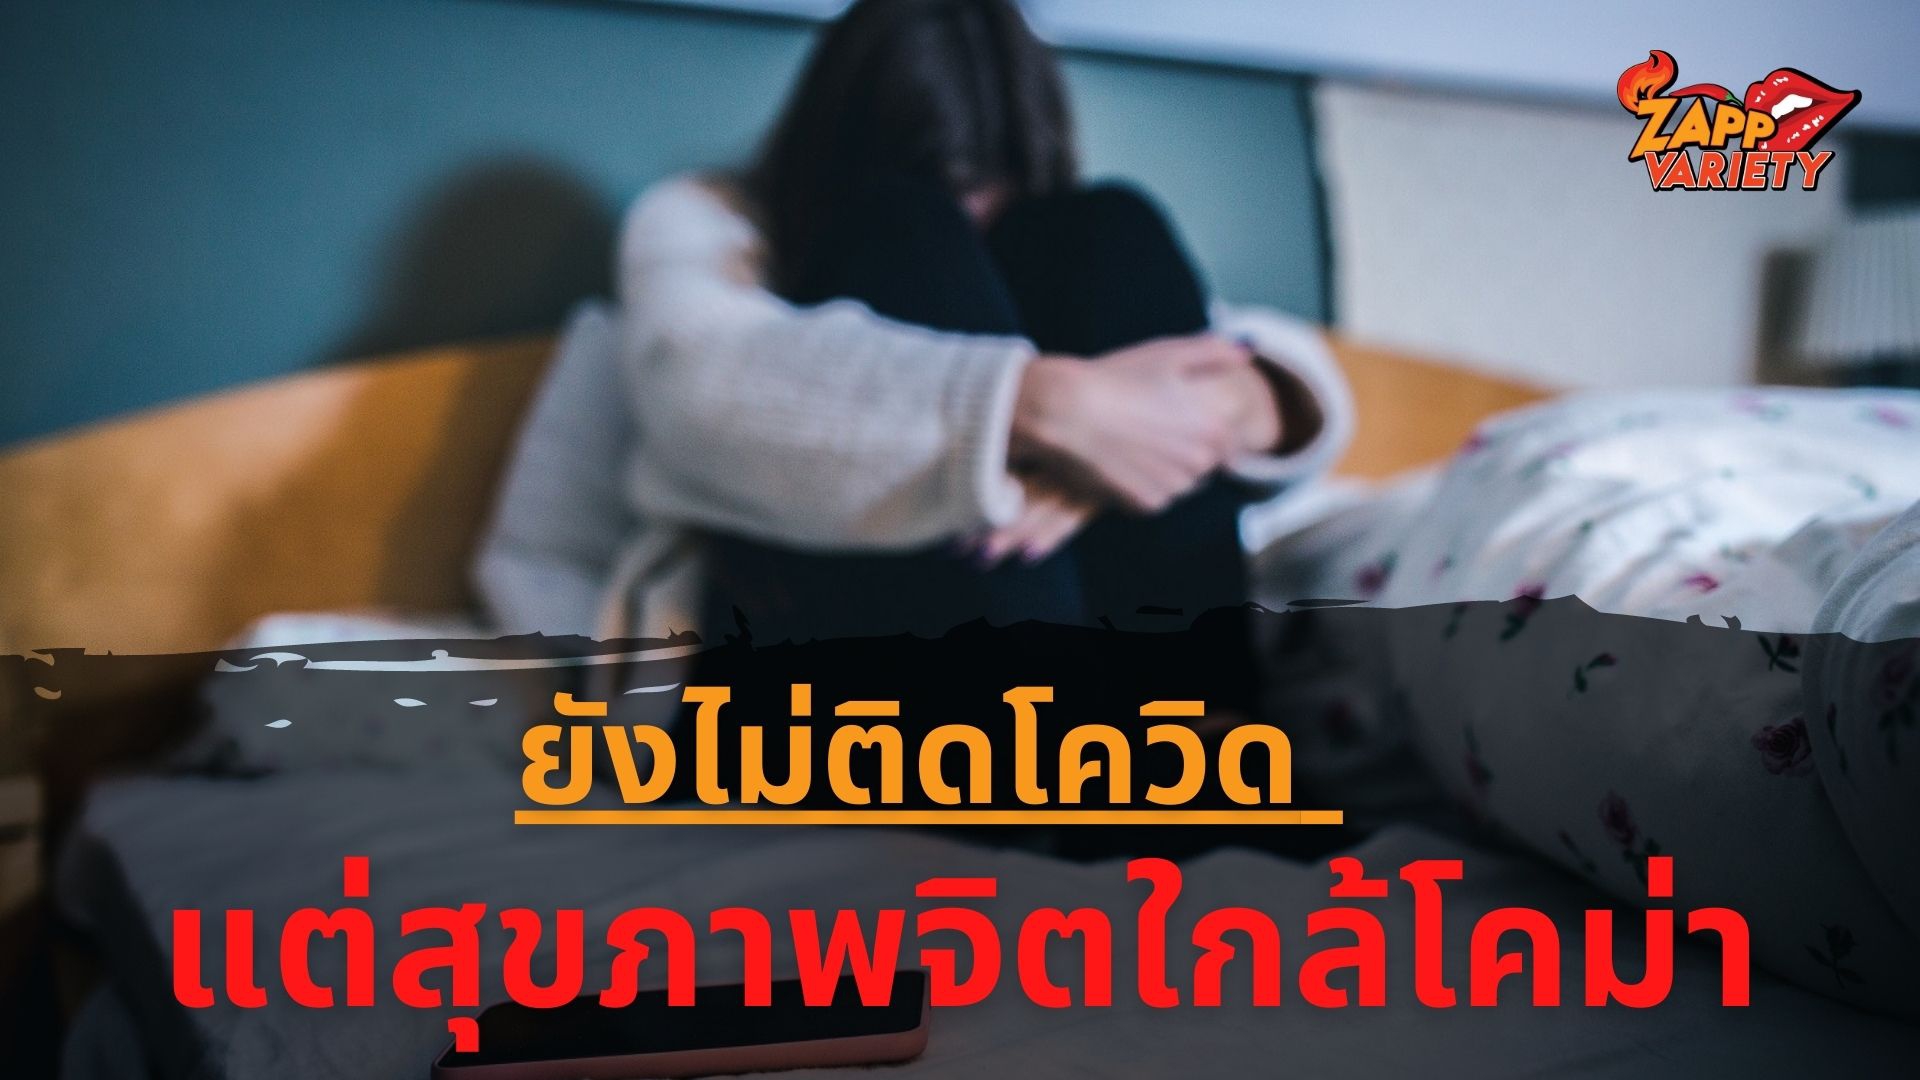 จิตแพทย์แนะวิธีสร้างภูมิคุ้มกันทางใจ เหตุคนไทยเครียดซึมเศร้า ยังไม่ติดโควิดแต่สุขภาพจิตใกล้โคม่า